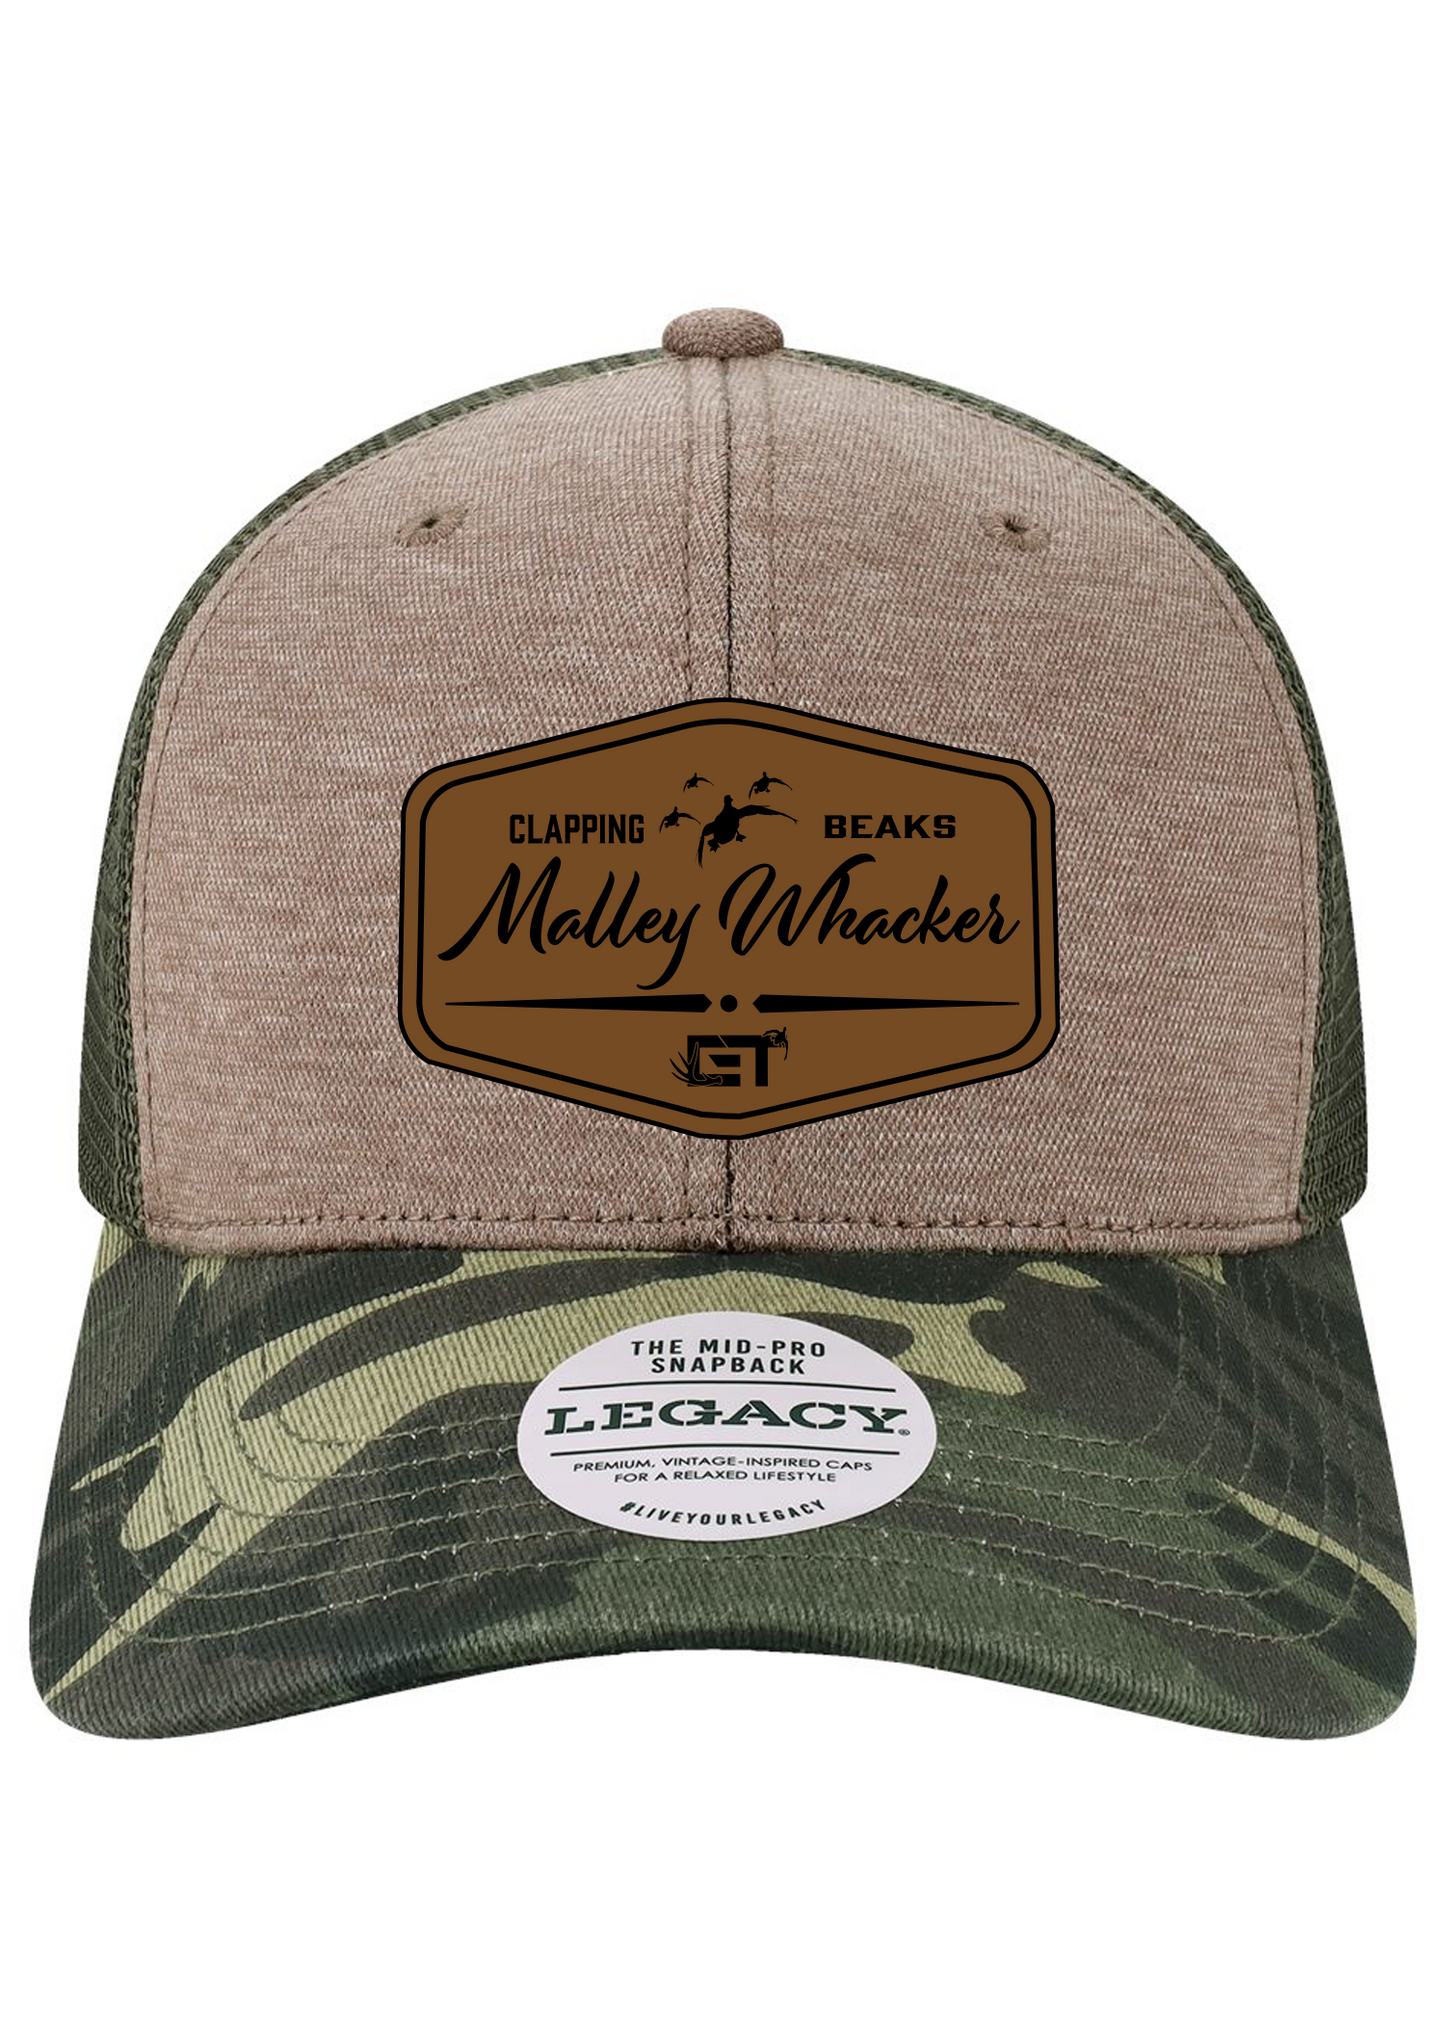 Clappn' Beaks Legacy Trucker Hats